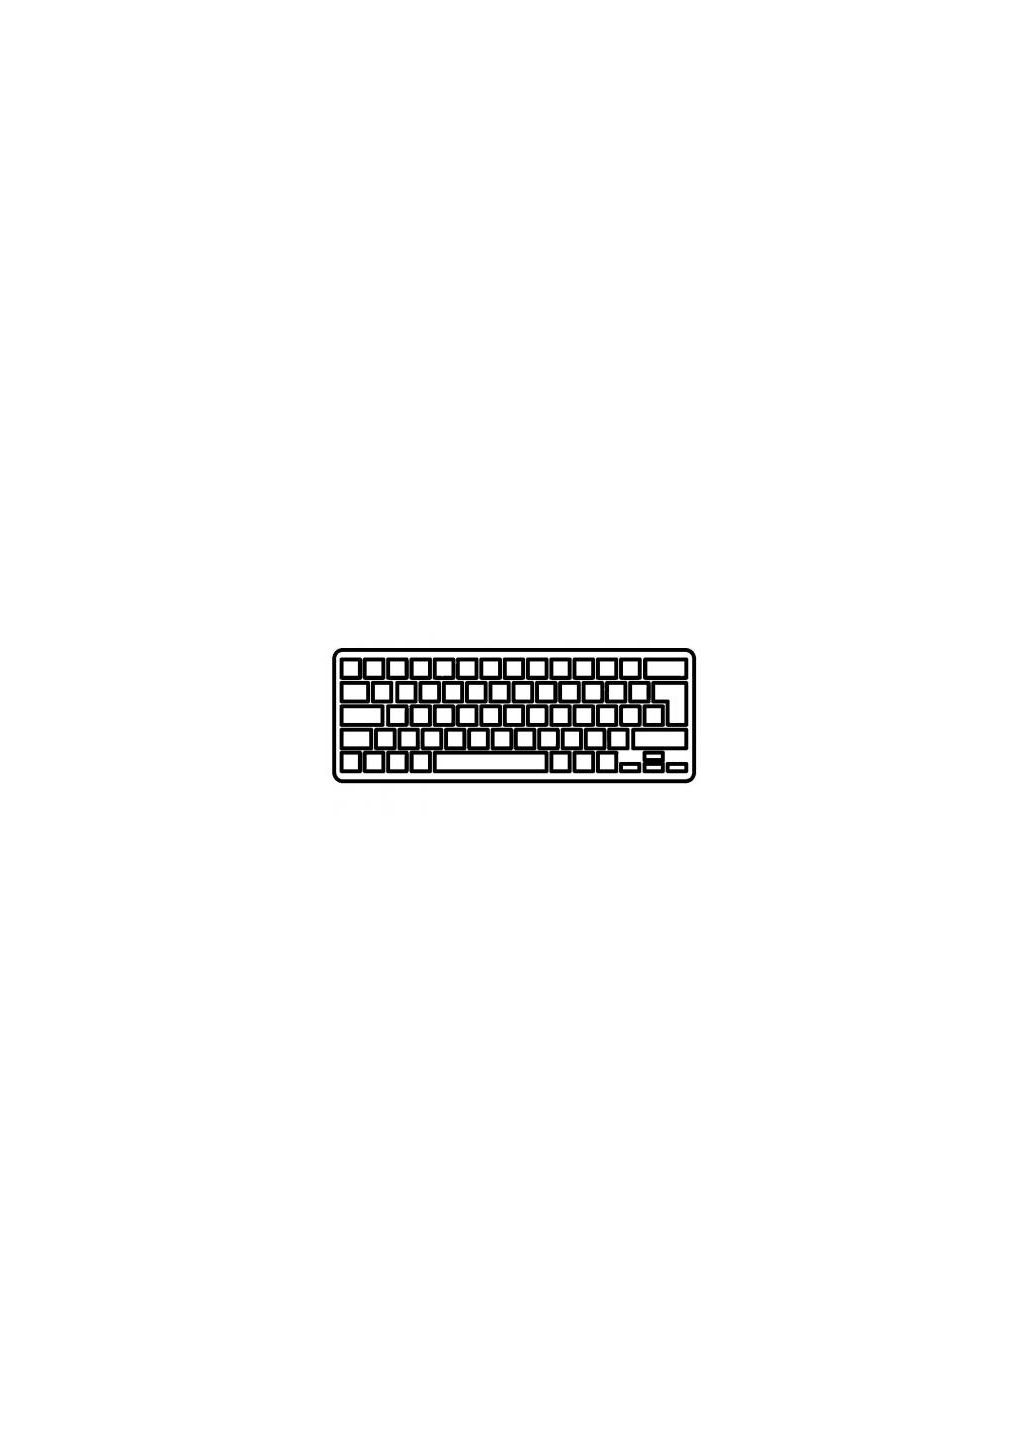 Клавиатура ноутбука Aspire S7191 (11,6") серебро без рамки подсветкой RU (A43799) Acer aspire s7-191 (11, 6") серебро без рамки подсветкой (276707574)